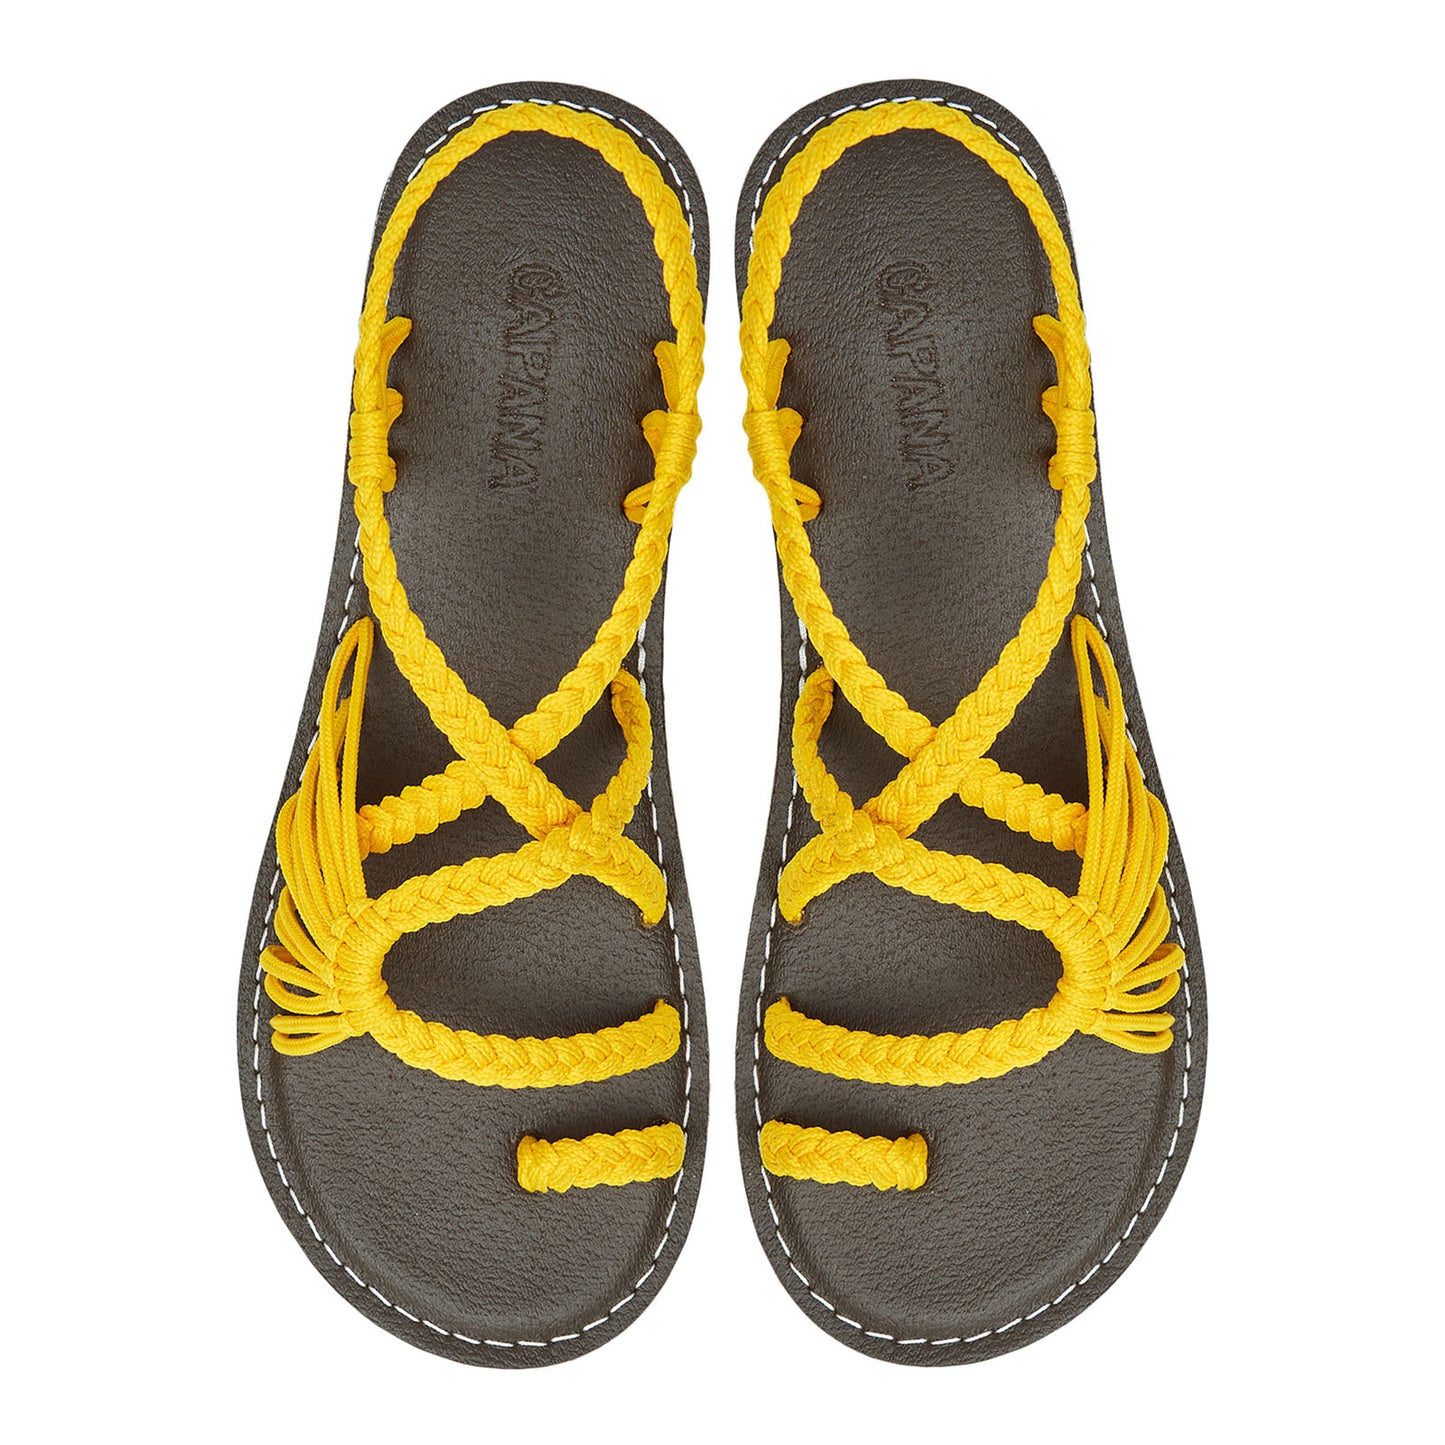 Commune Golden Yellow Rope Sandals Marigold loop design Flat sandals for women